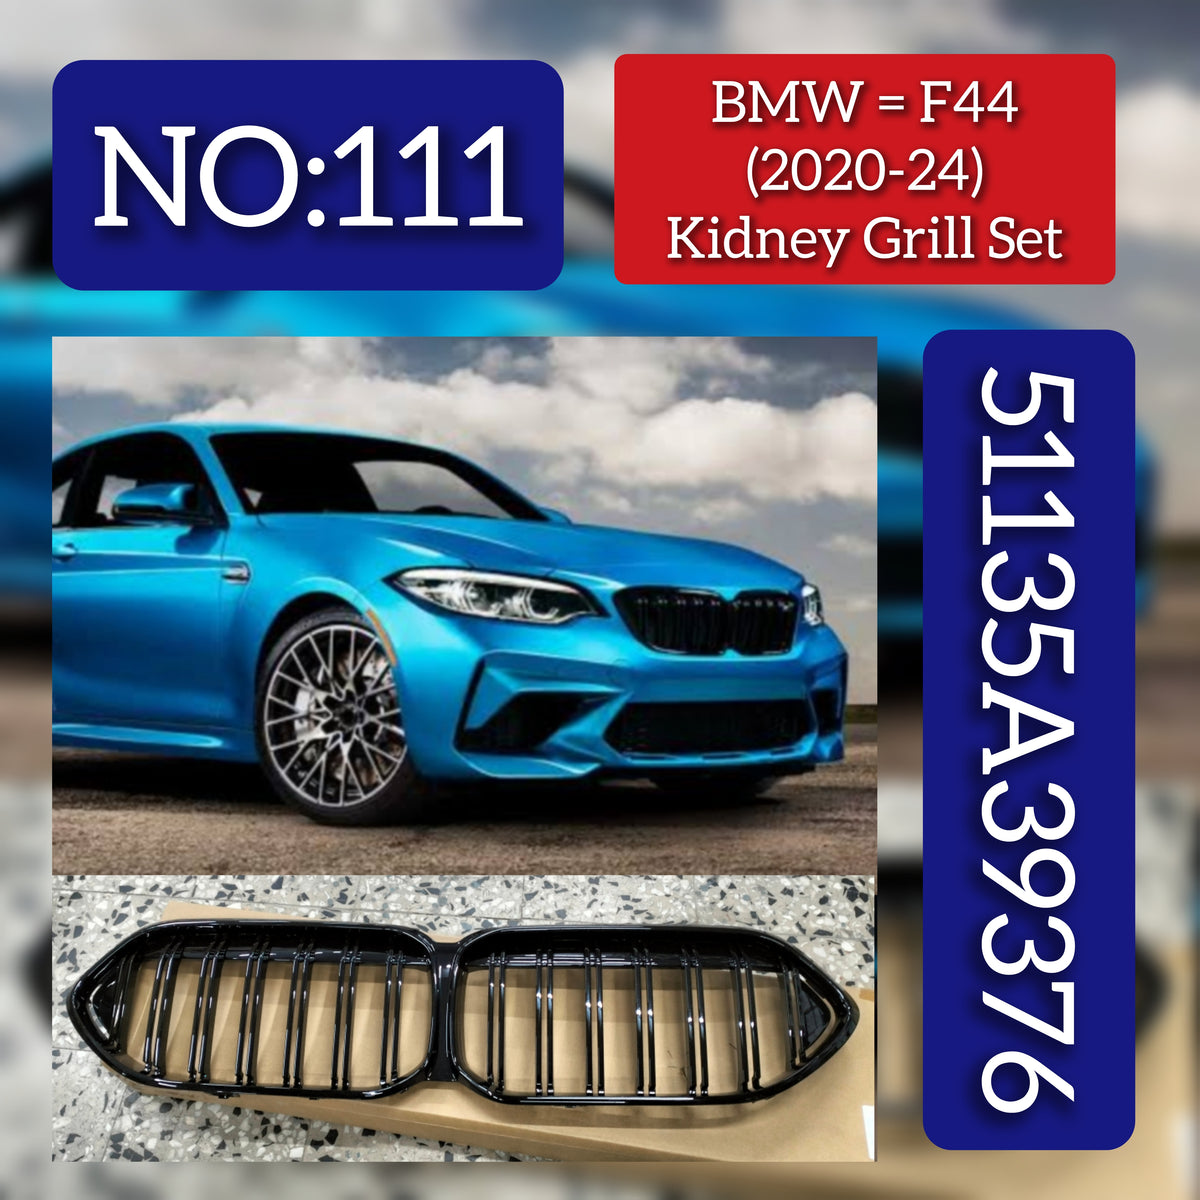 BMW = F44 (2020-24) Kidney Grill Set 51135A39376. Tag 211